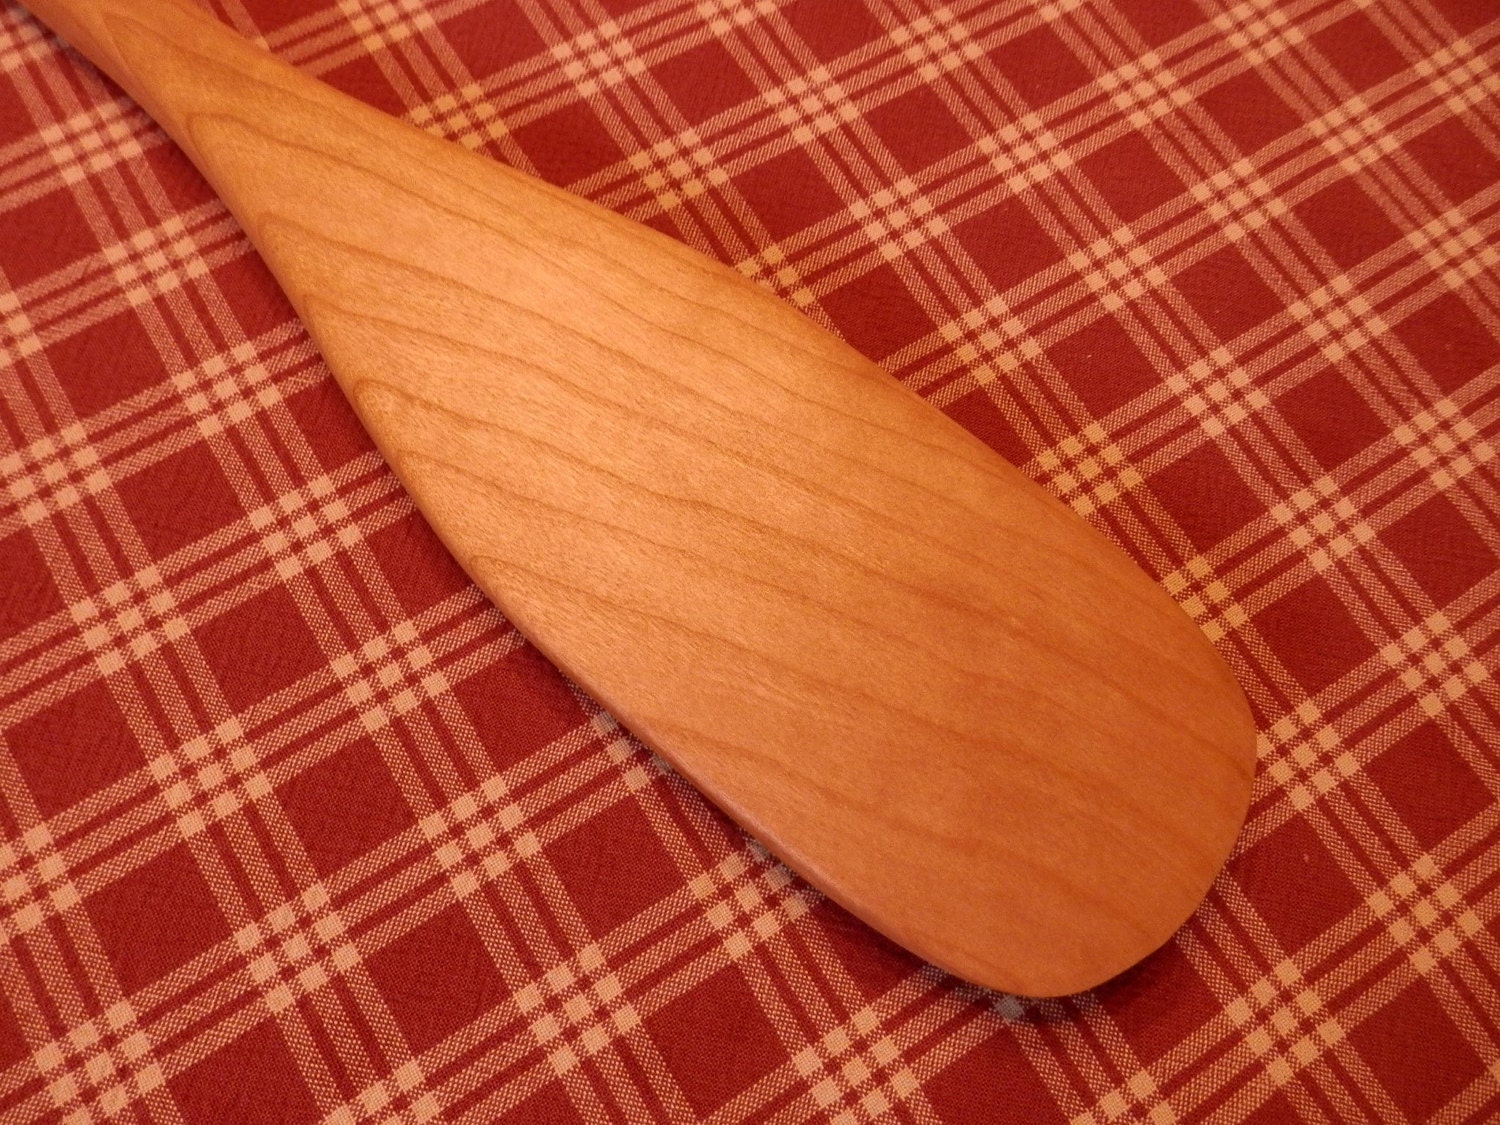 Miniature Decorative Wooden Canoe Paddles by HousatonicCanoeShop